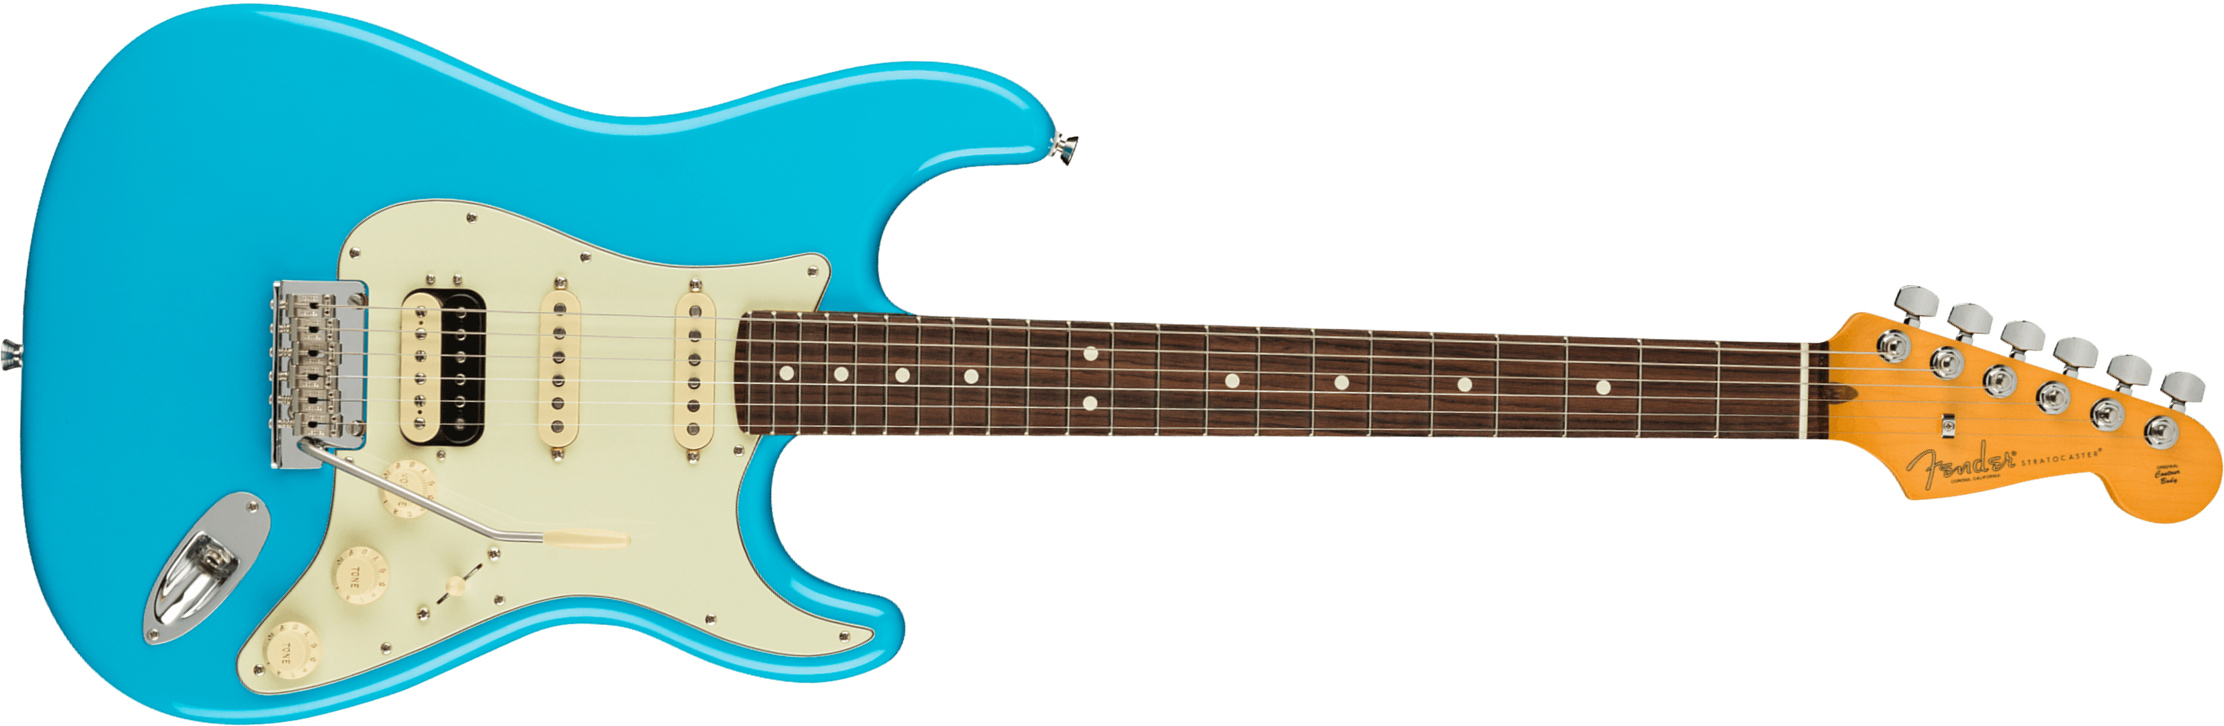 Fender Strat American Professional Ii Hss Usa Rw - Miami Blue - E-Gitarre in Str-Form - Main picture